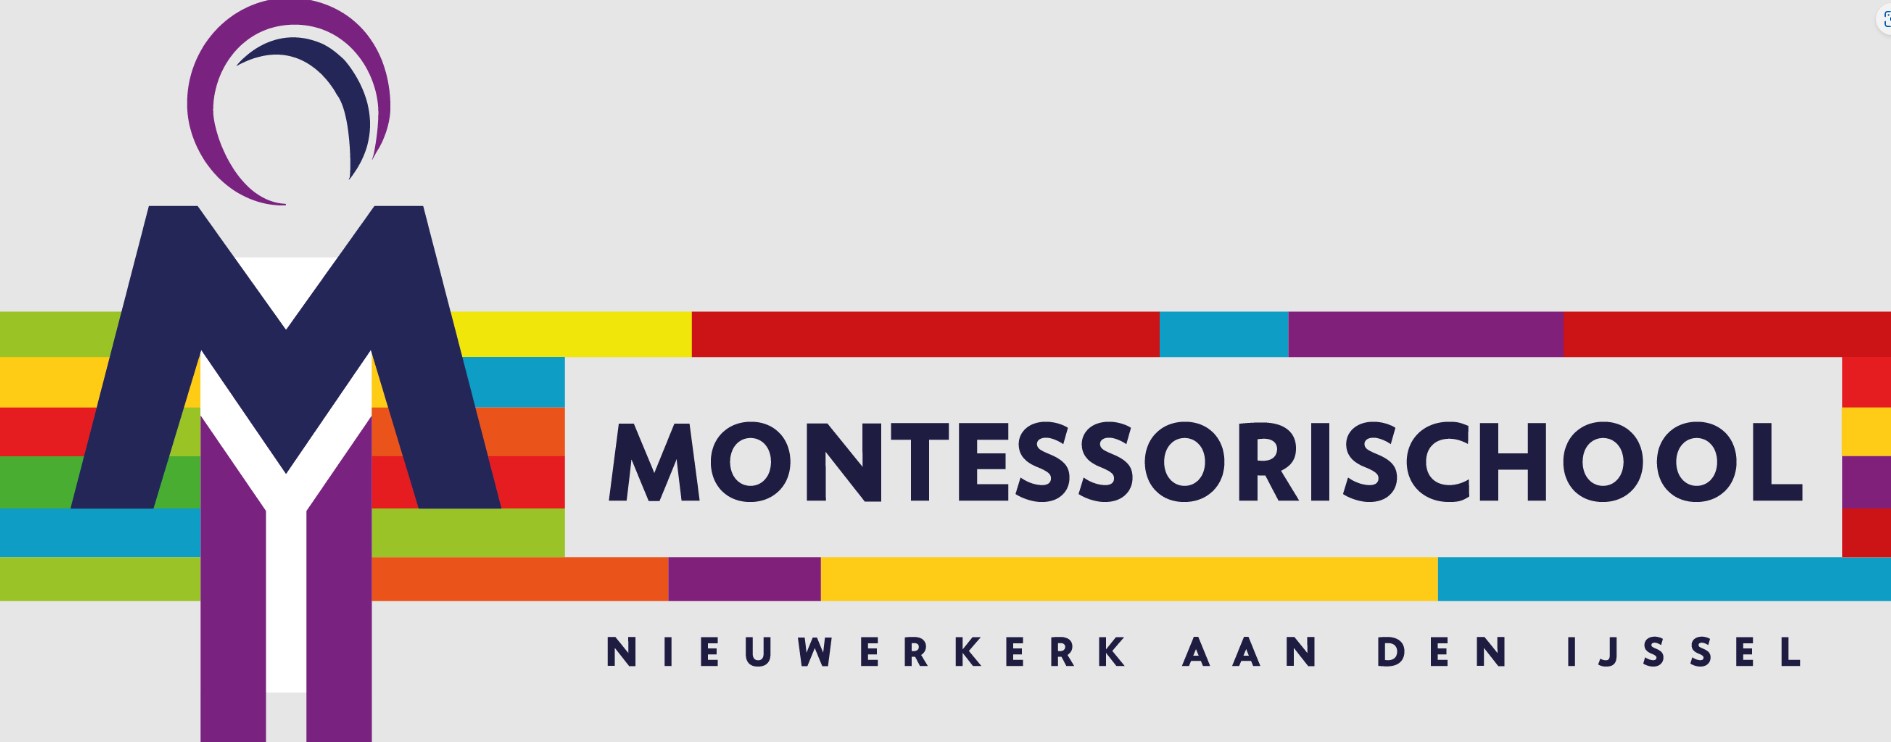 Montessorischool Nieuwerkerk aan den IJssel